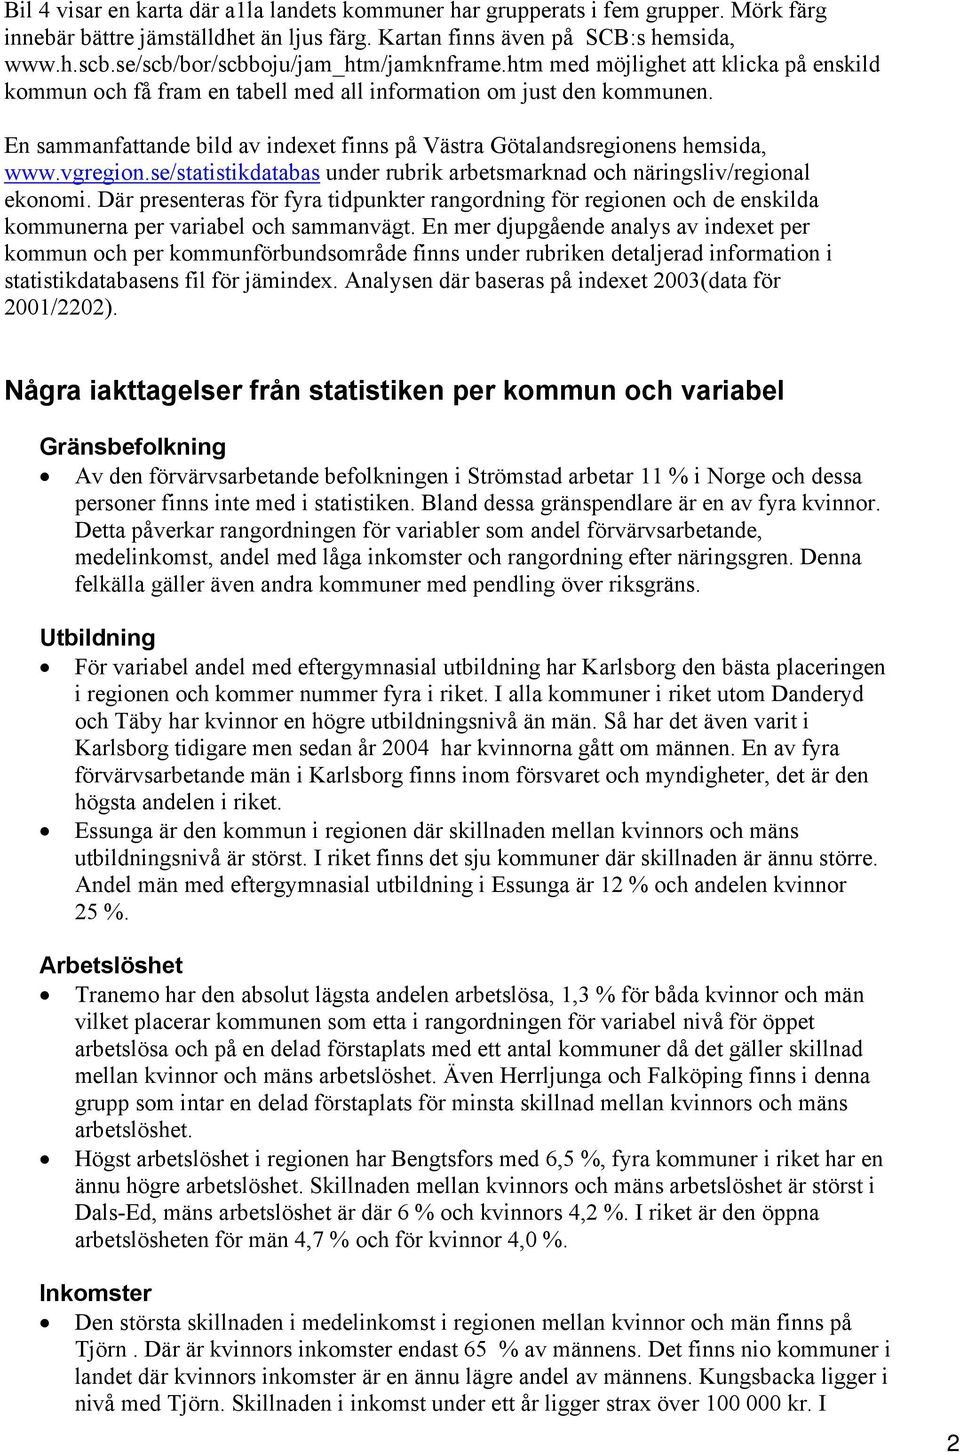 En sammanfattande bild av indexet finns på Västra Götalandsregionens hemsida, www.vgregion.se/statistikdatabas under rubrik arbetsmarknad och näringsliv/regional ekonomi.